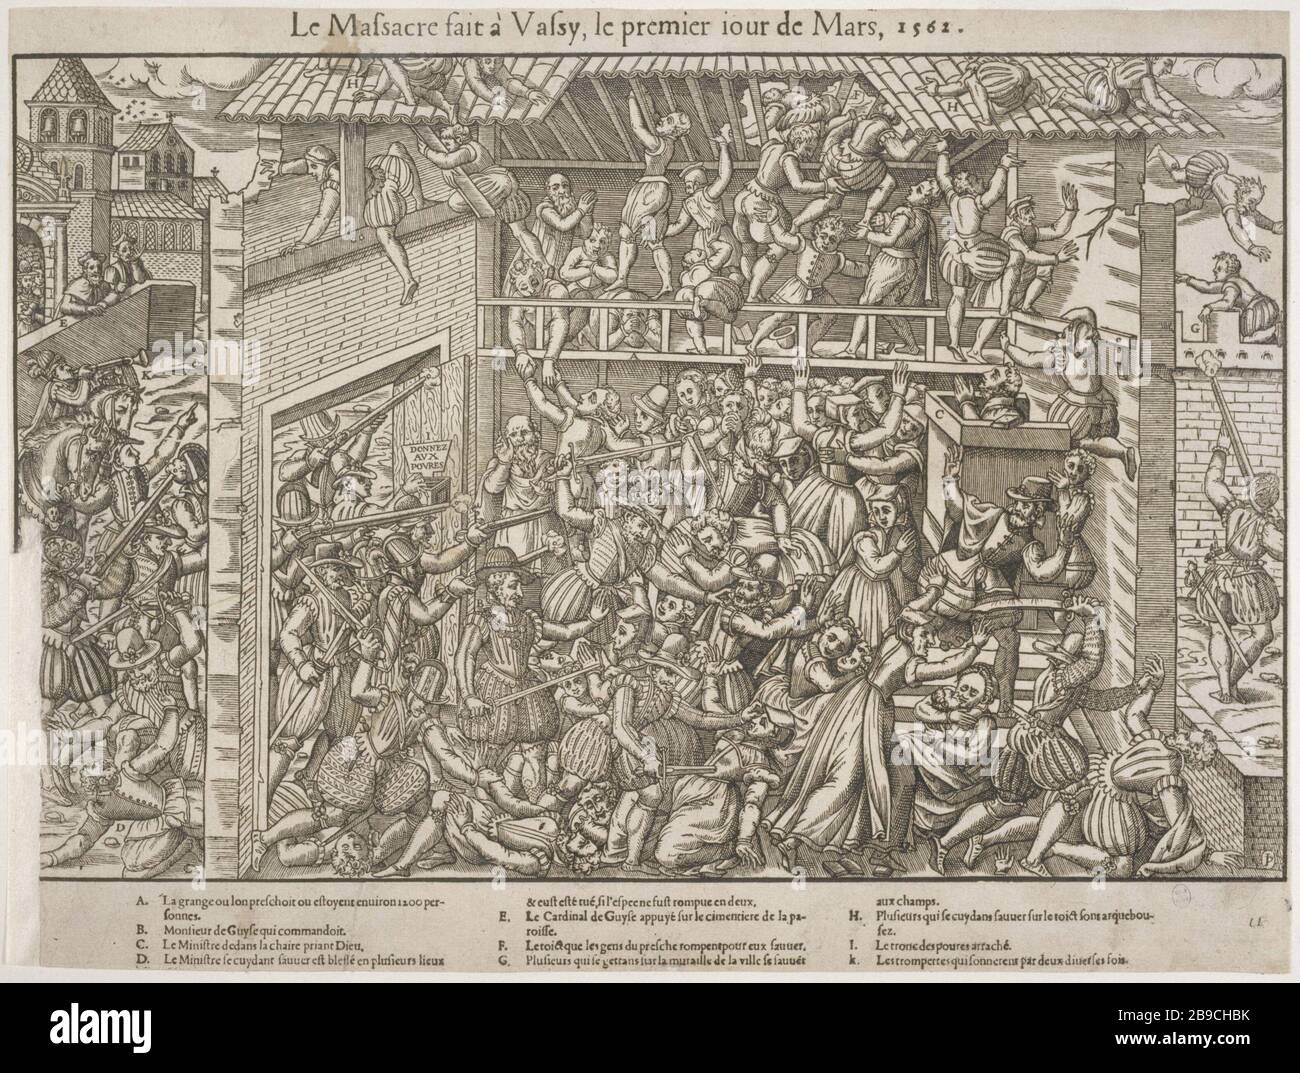 Das Massaker von Vassy "Le Massacre fait à Wassy, le Premier jour de mars 1562". Tiefdruck de Jacques Tortorel et Jean-Jacques Perrissin. Paris, musée Carnavalet. Stockfoto